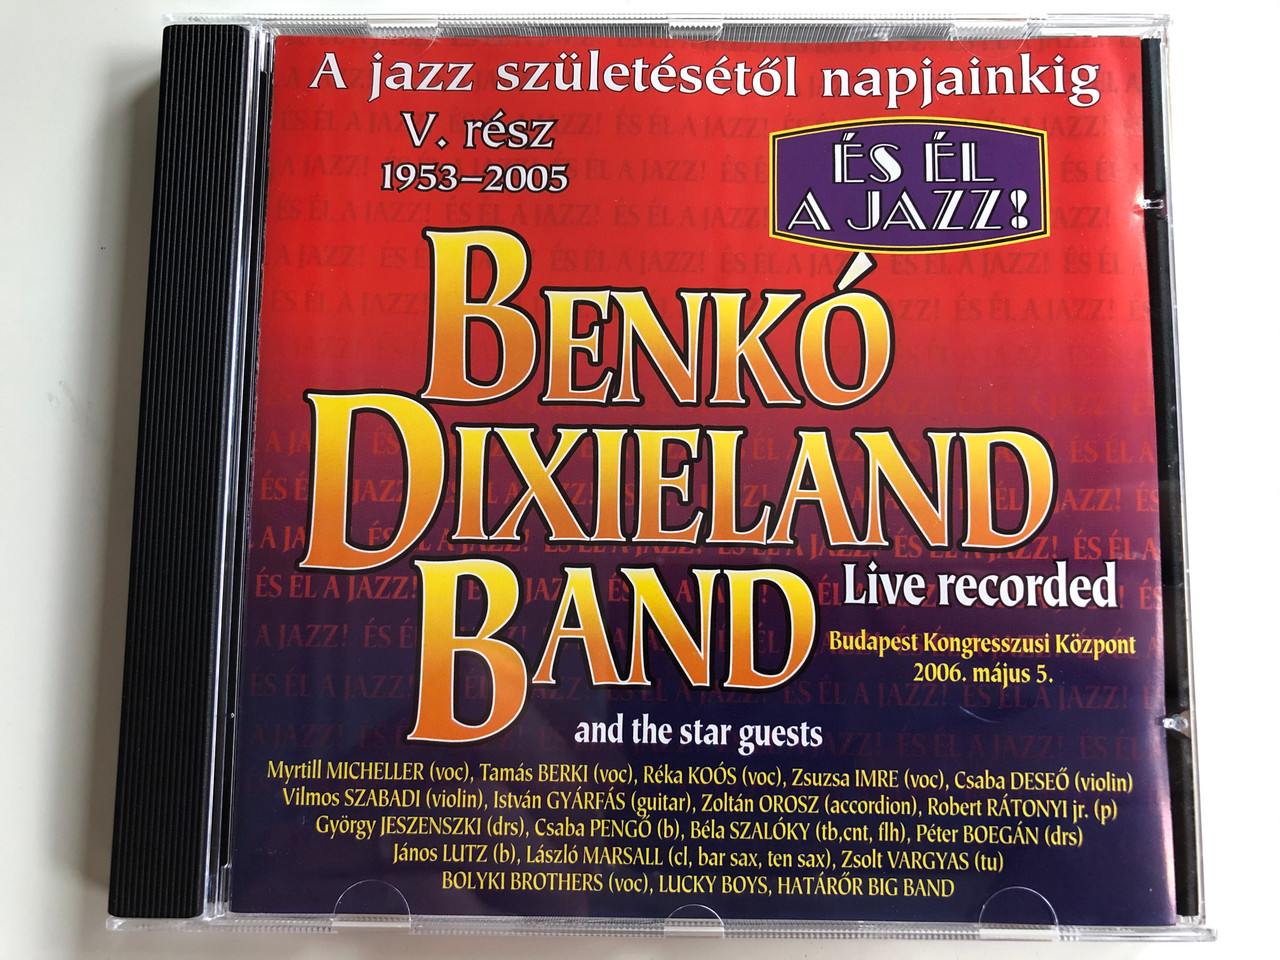 Benkó Dixieland Band and the star guestst - És Él a jazz! (1953-2006) /  Live Recorded, Budapest Kongreszusi Kozpont 2006. majus 5. / A jazz  szuletesetol napjainkig / Myrtill Micheller (voc), Tamas